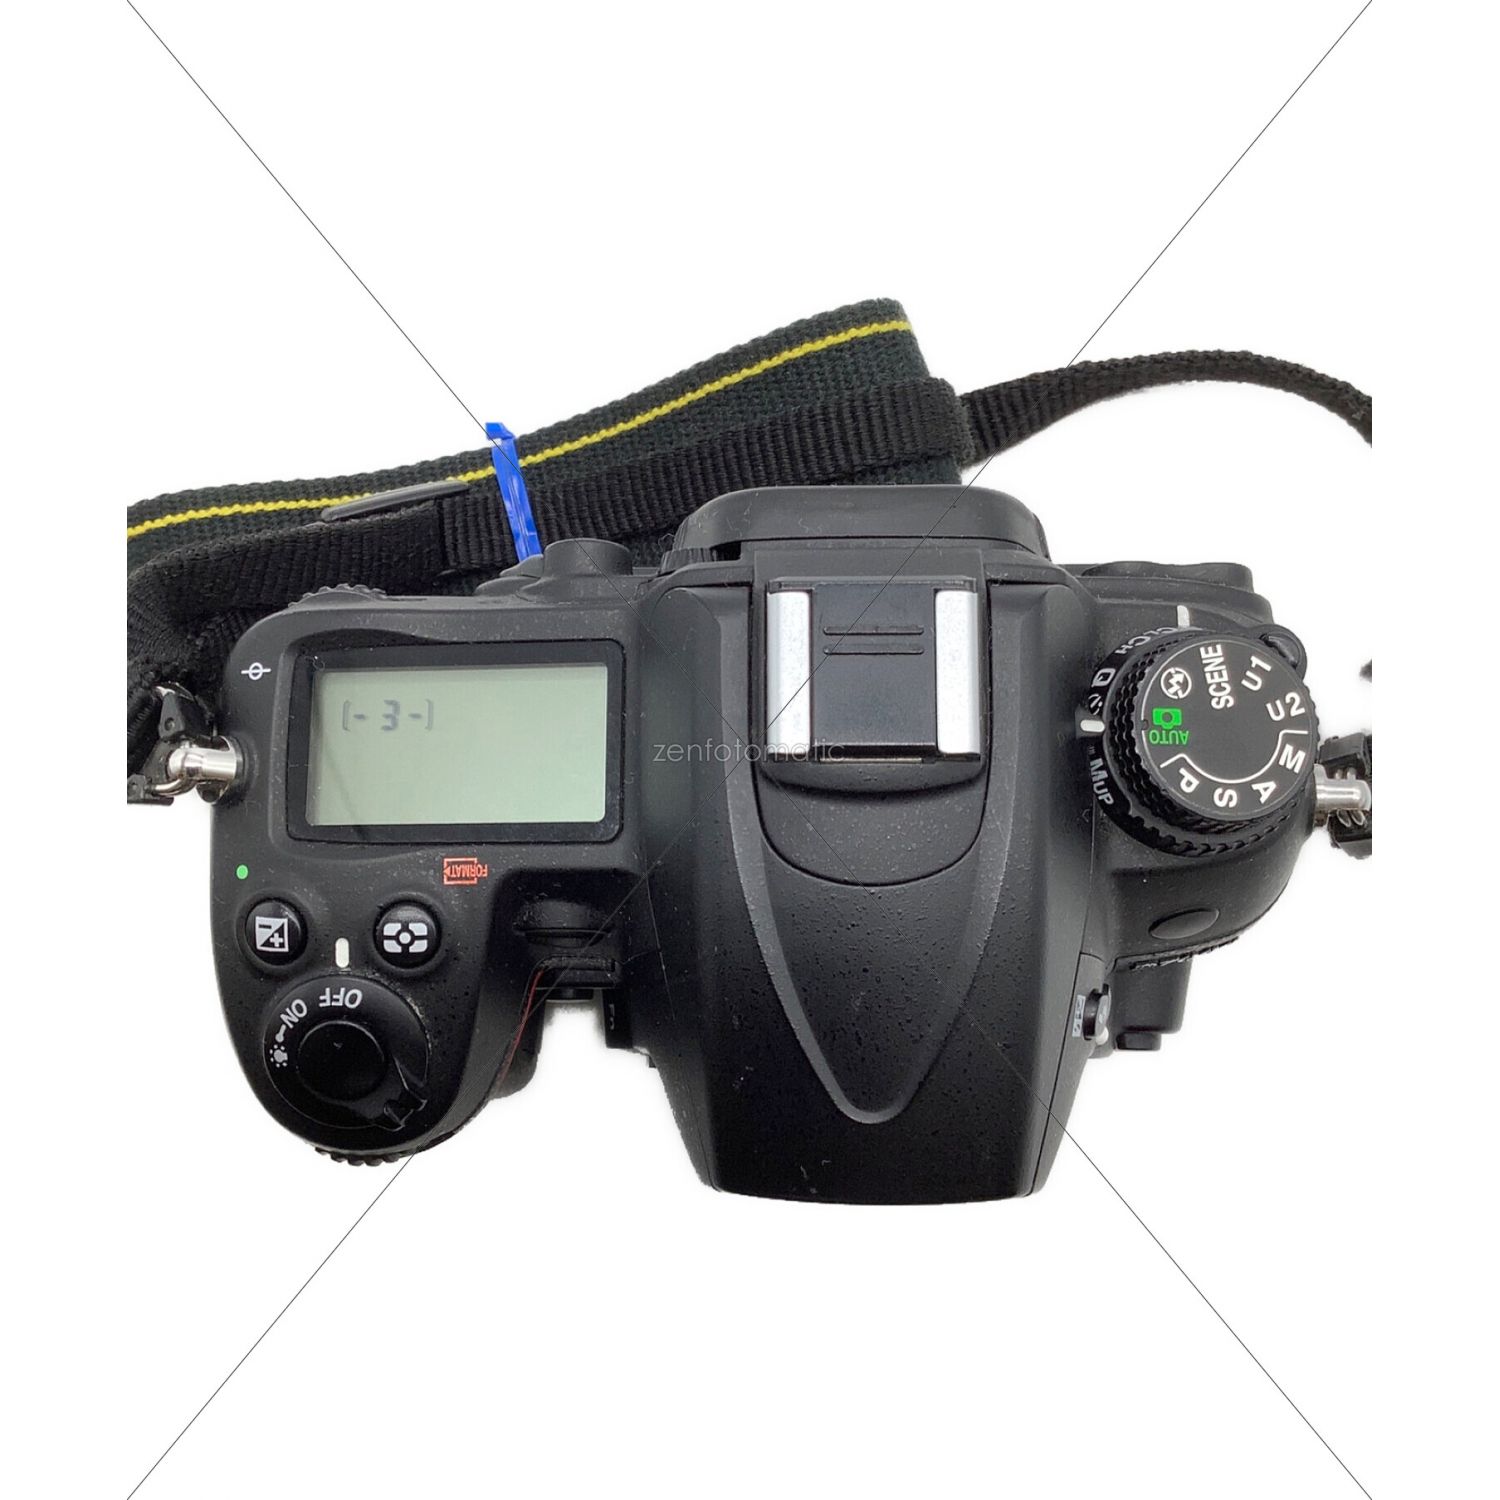 Nikon (ニコン) デジタル一眼レフカメラ 動作確認済 D7000 ボディ 1690